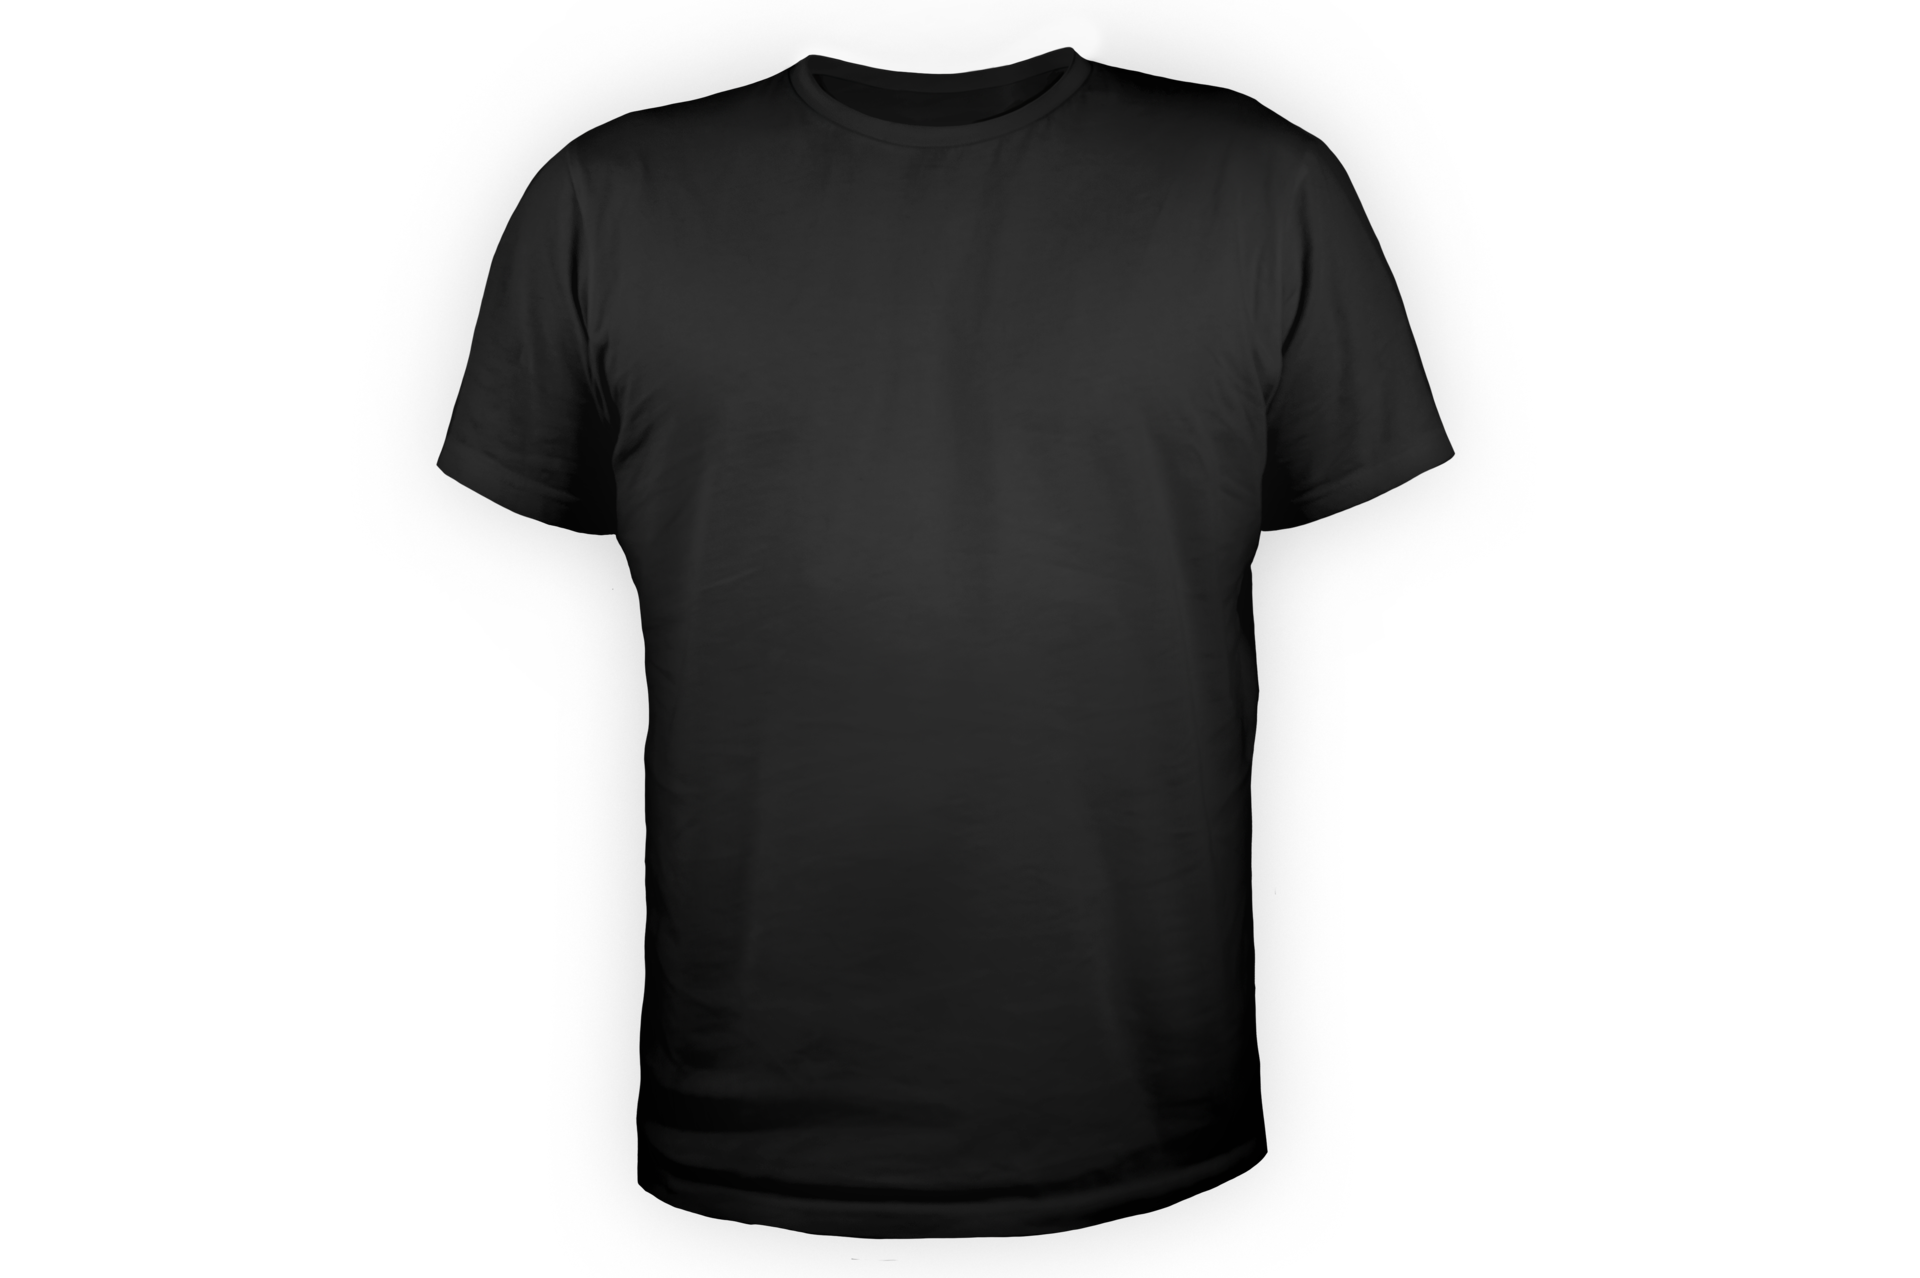 Free Plain Black T-Shirt on Transparent Background 12628220 PNG with  Transparent Background